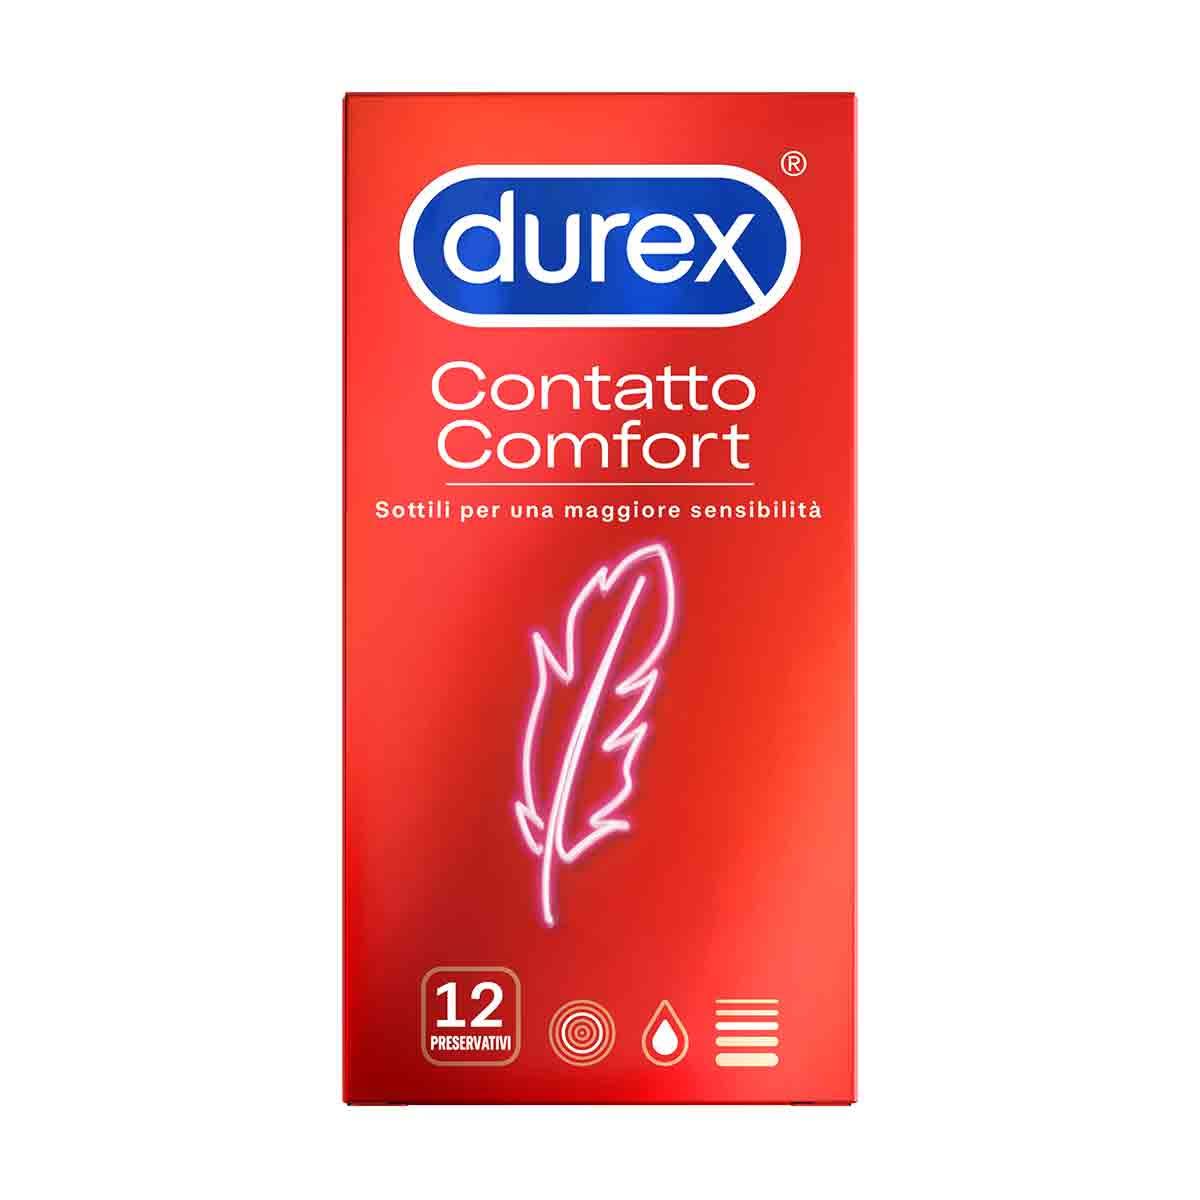 924893732 - Durex Contatto Comfort Profilattici 12 pezzi - 7864545_3.jpg